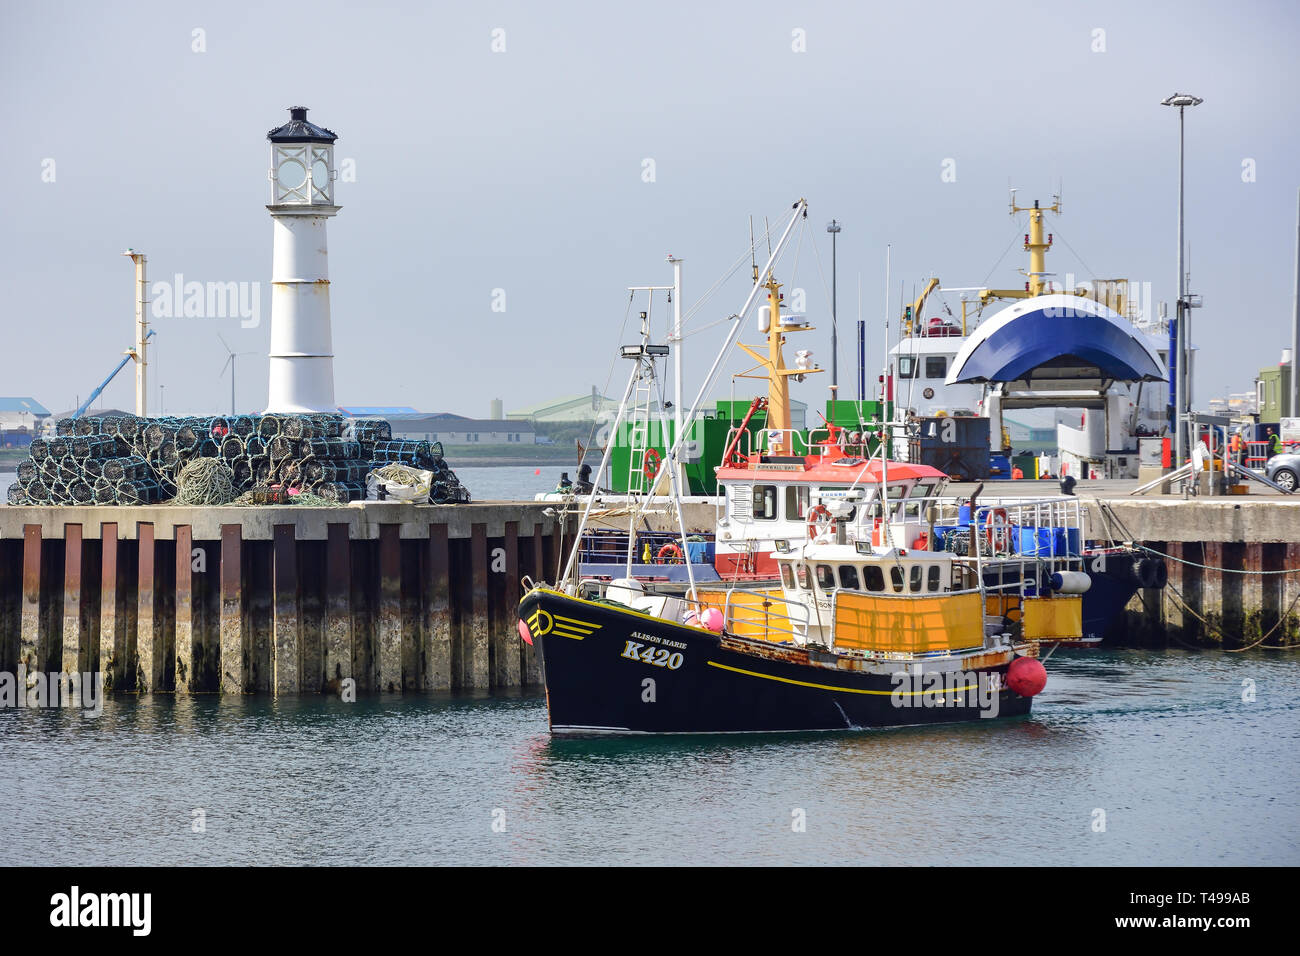 L'entrée en bateau de pêche, le port de Kirkwall, Orkney Islands, continentale, îles du Nord, Ecosse, Royaume-Uni Banque D'Images